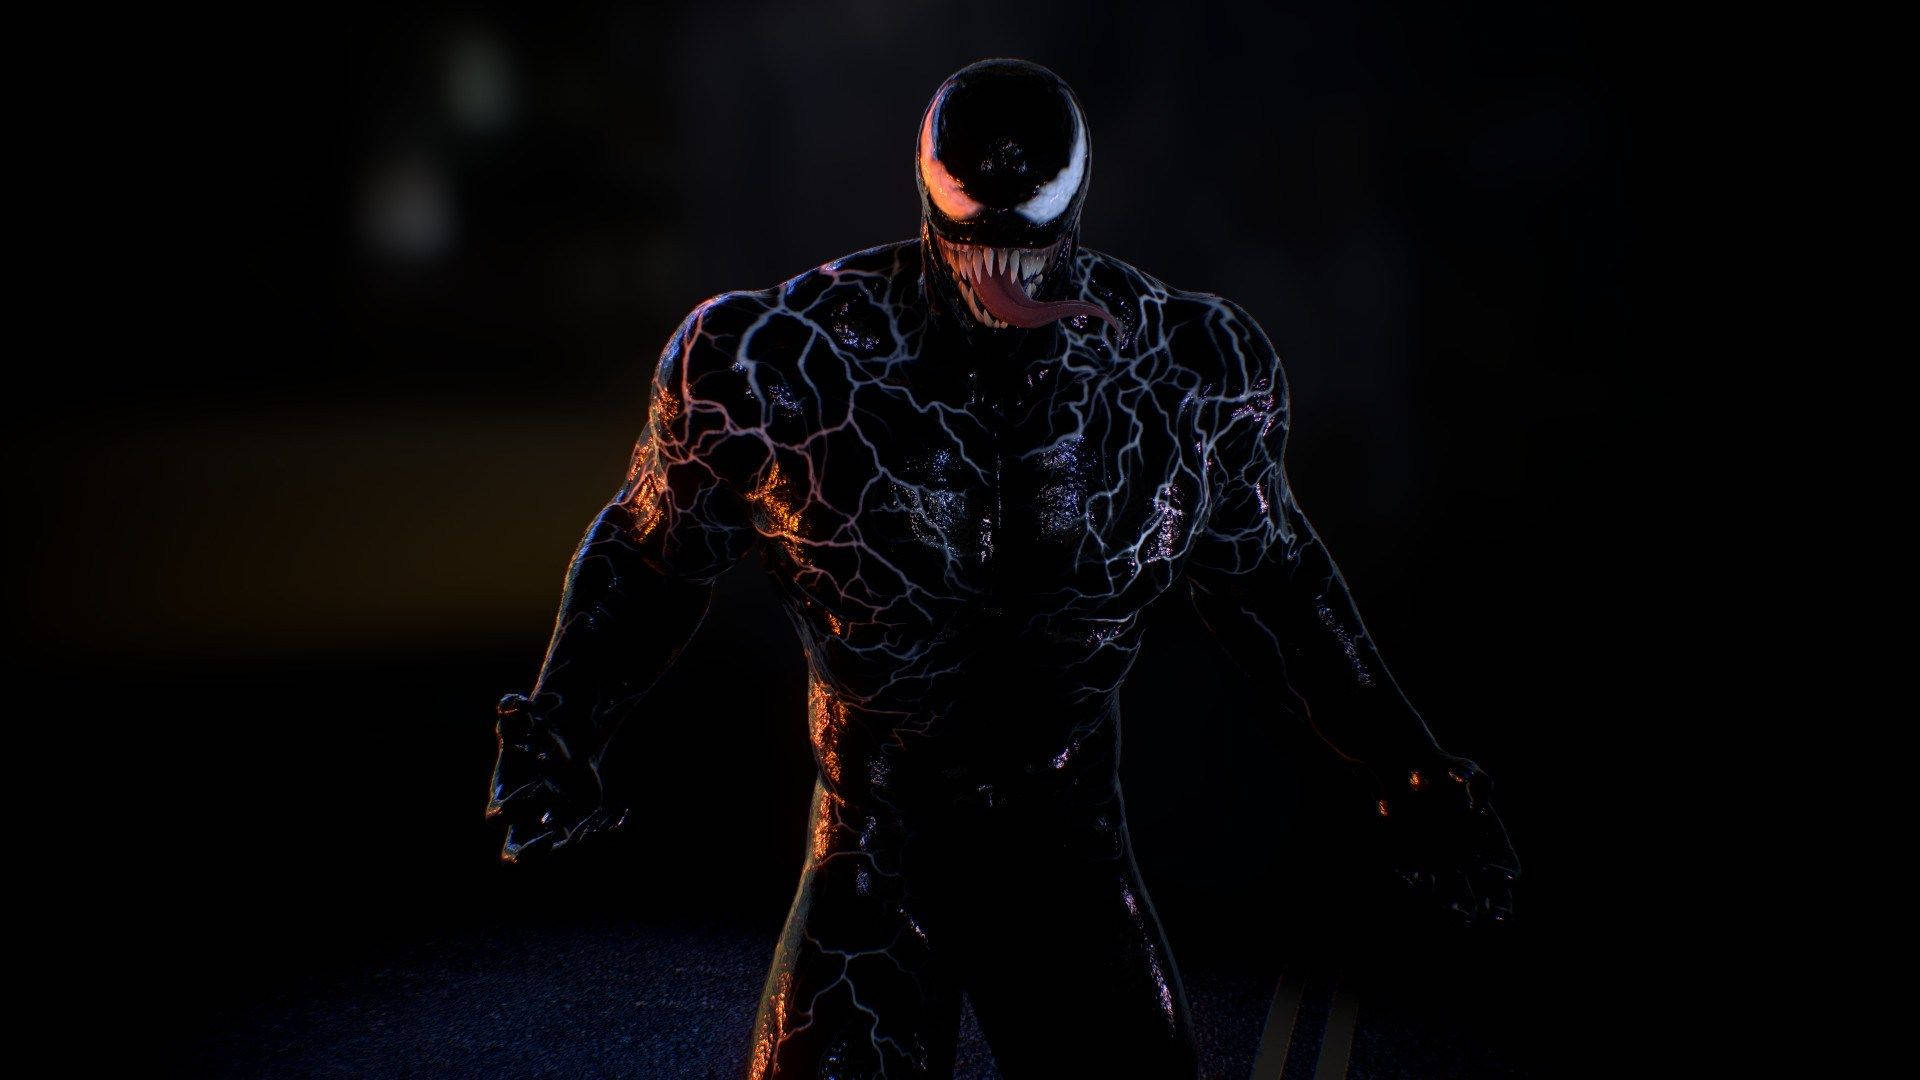 Venom Movie Suit With White Veins Wallpaper